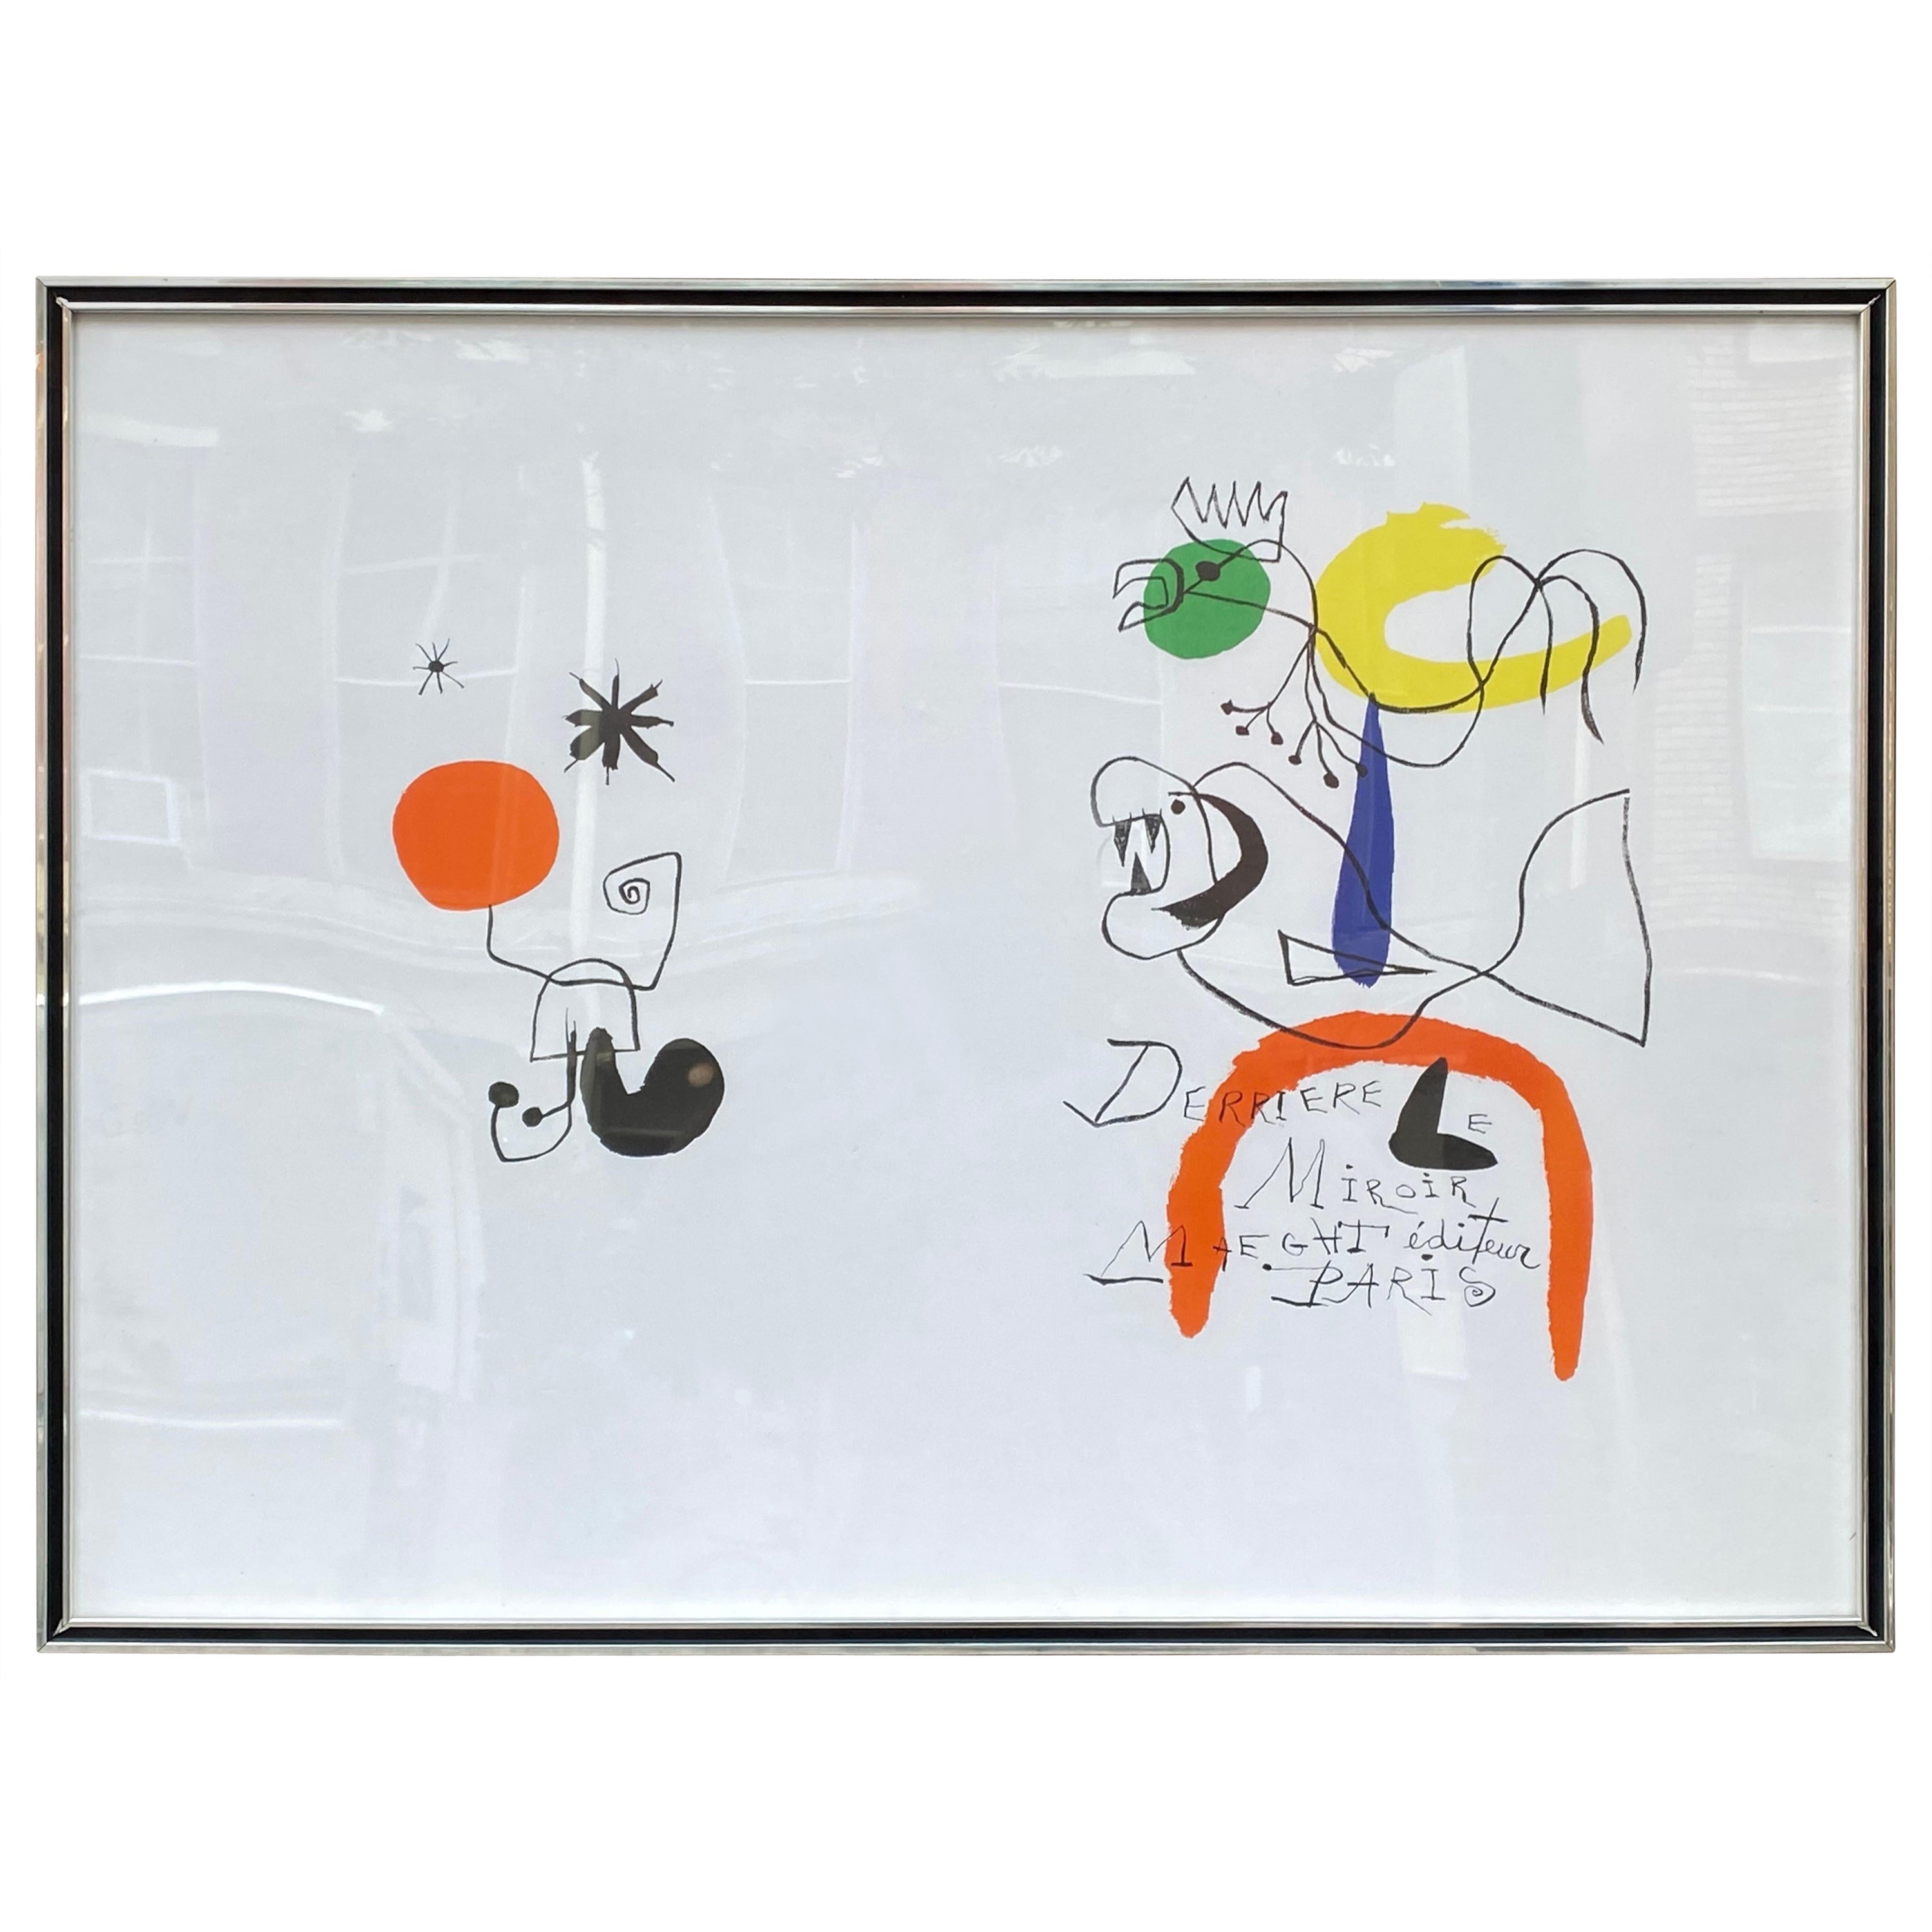 Joan Miro Derrieve Le Miroir Exhibition Poster For Sale